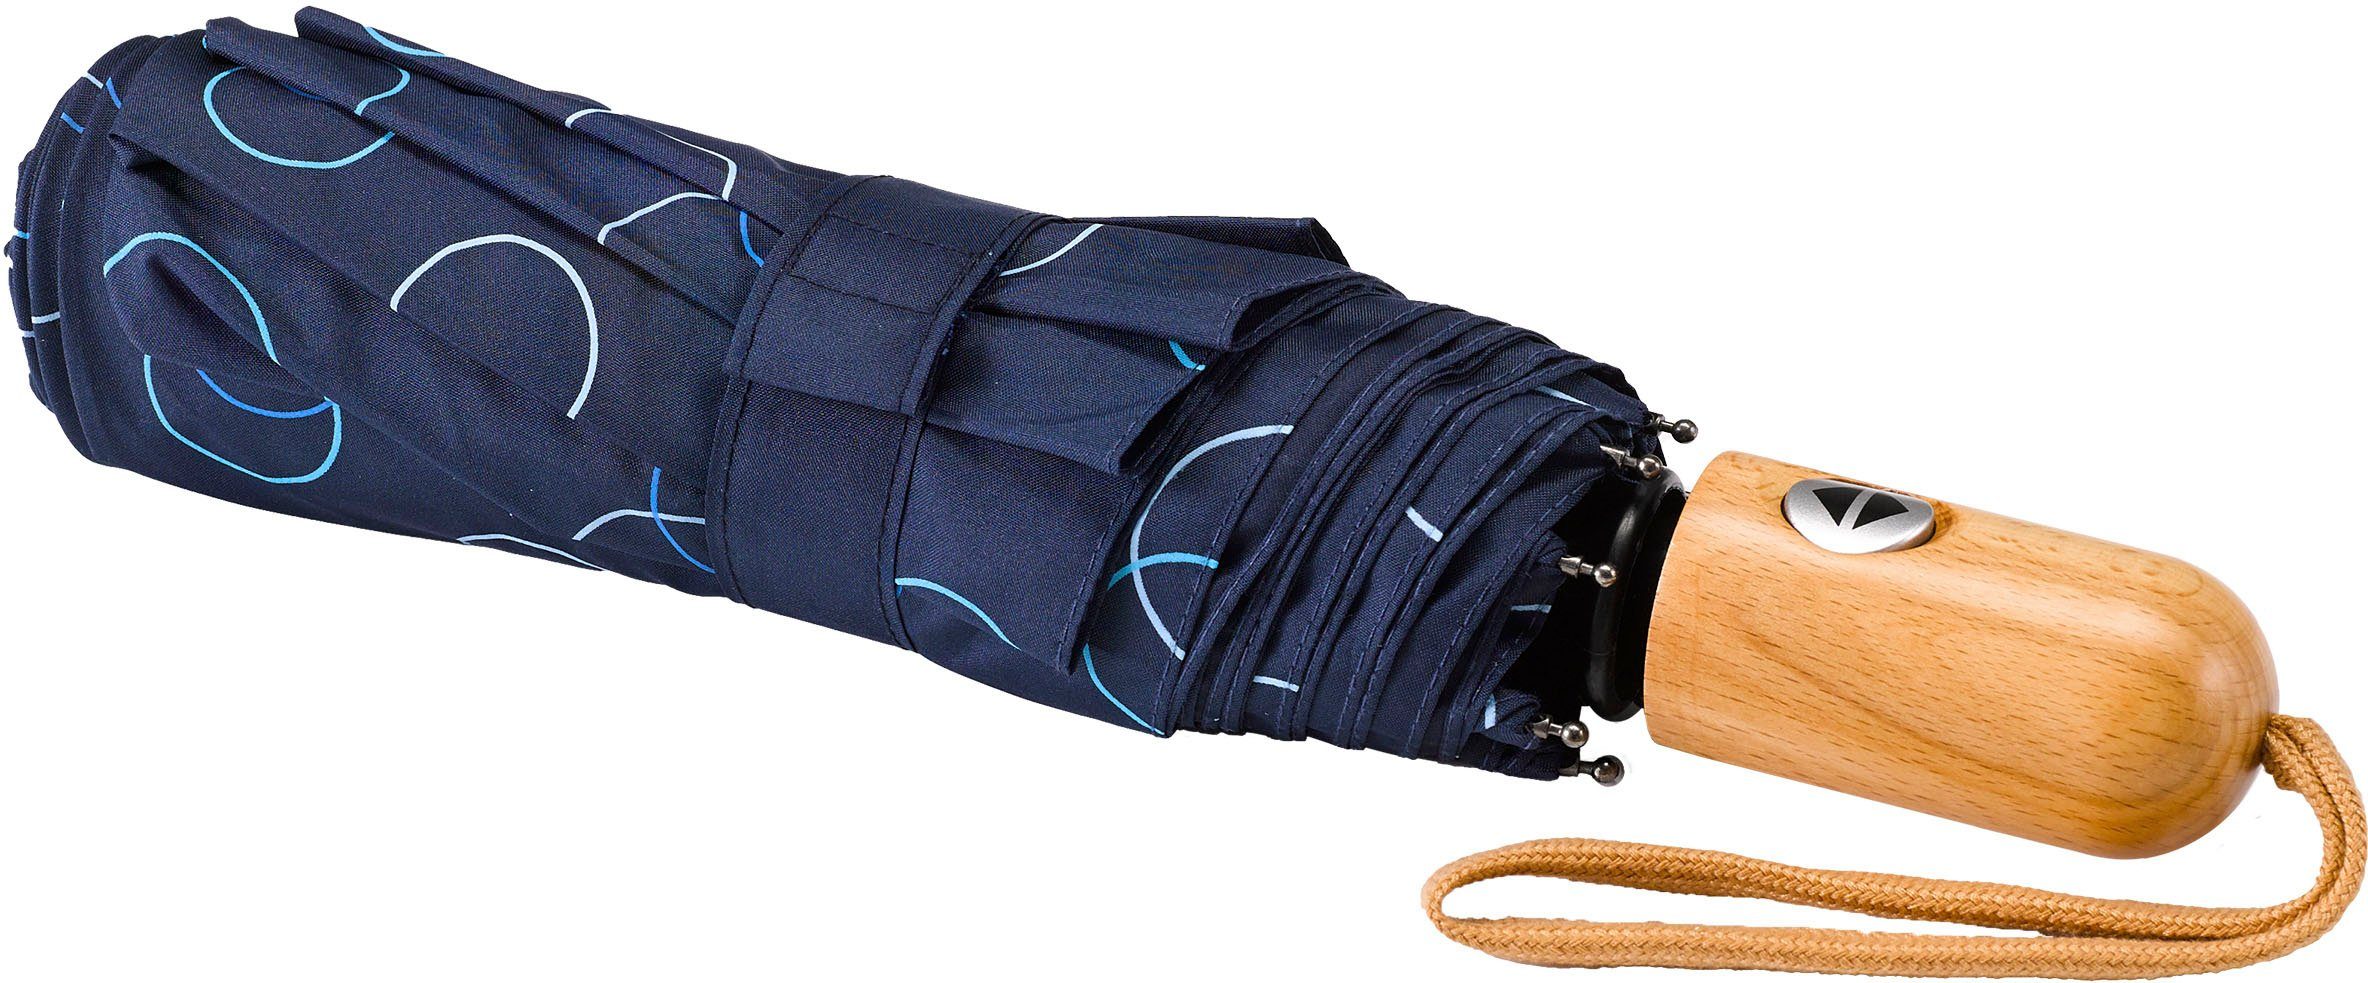 Kreise marine, Umwelt-Taschenschirm, Taschenregenschirm blau EuroSCHIRM®